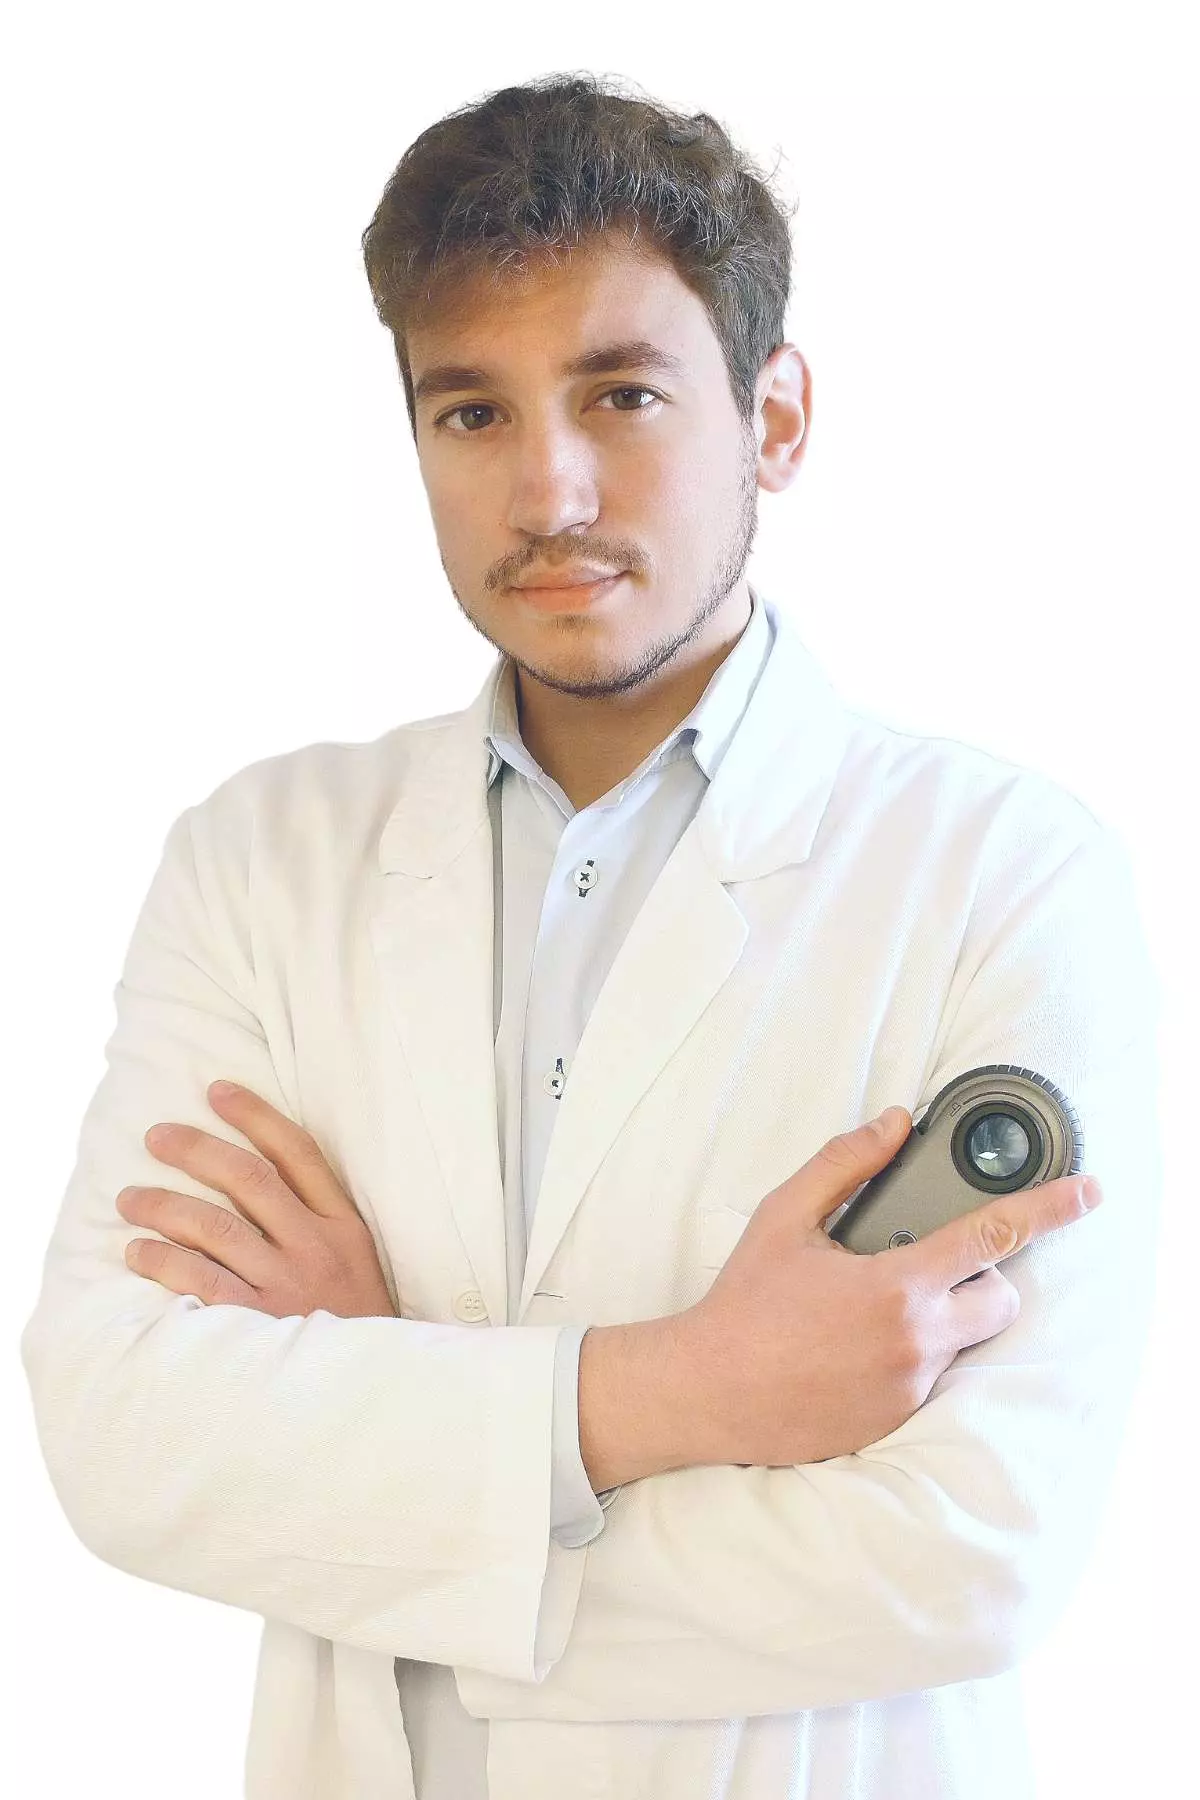 Dermatologo Dott. Antonio Furci